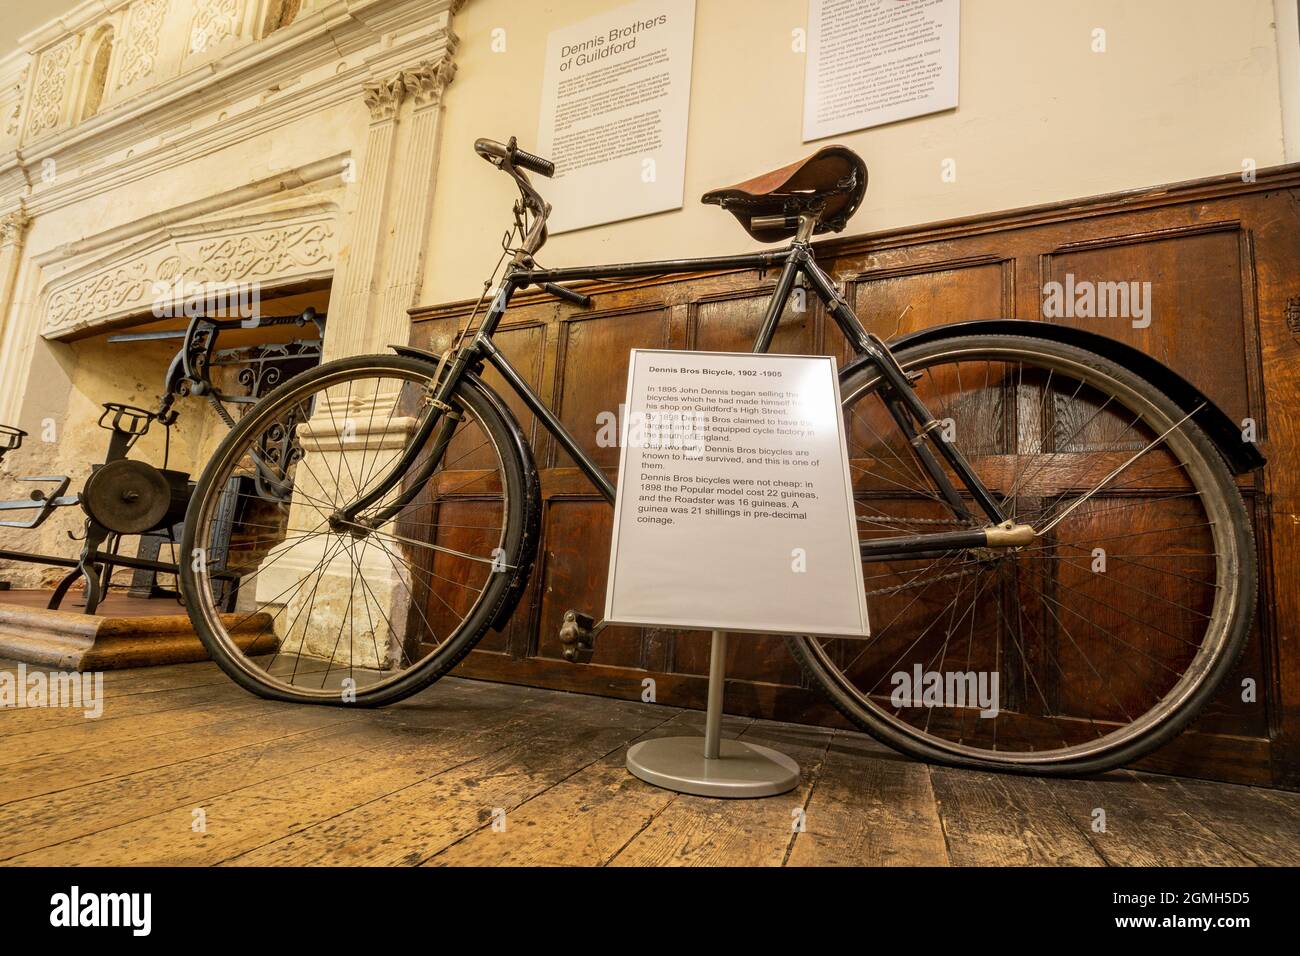 Intérieur du musée Guildford avec expositions d'histoire locale, Surrey, Angleterre, Royaume-Uni. Une bicyclette fabriquée par les frères Dennis en 1902 à 1905 Banque D'Images